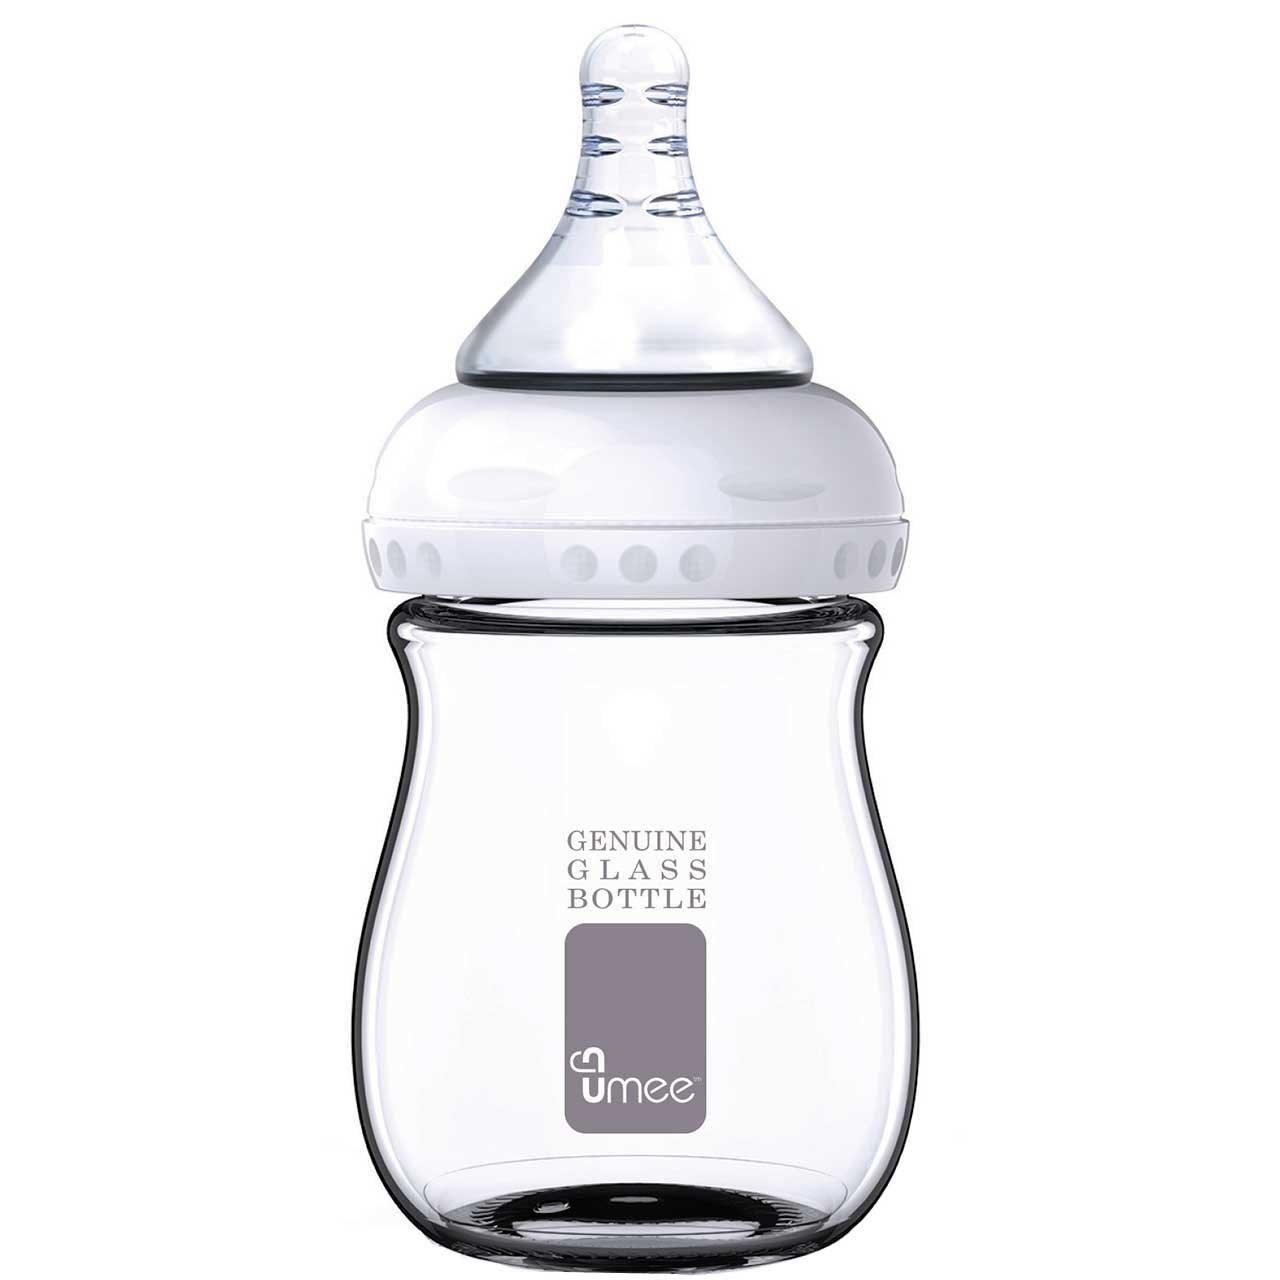 شیشه شیر یومیی مدل N100019 ظرفیت 150 میلی لیتر